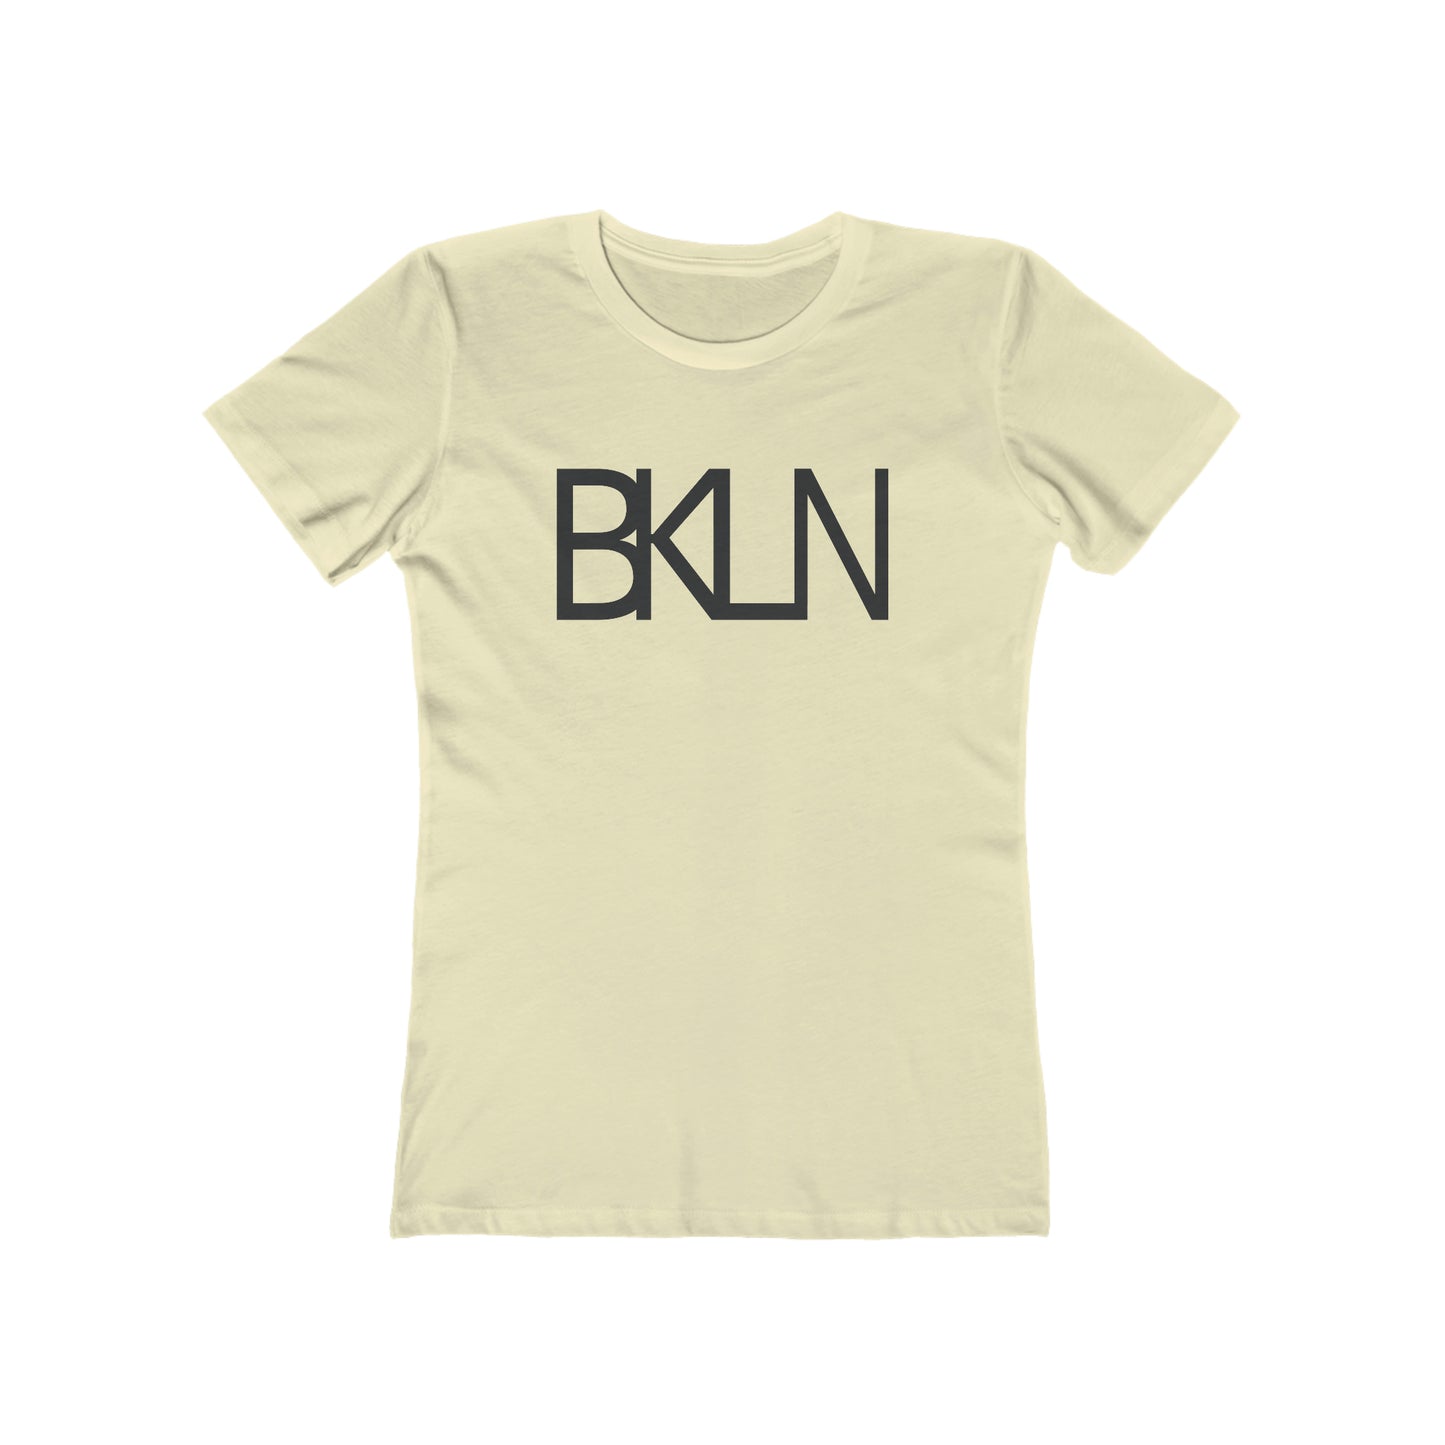 BKLN - Women's T-Shirt